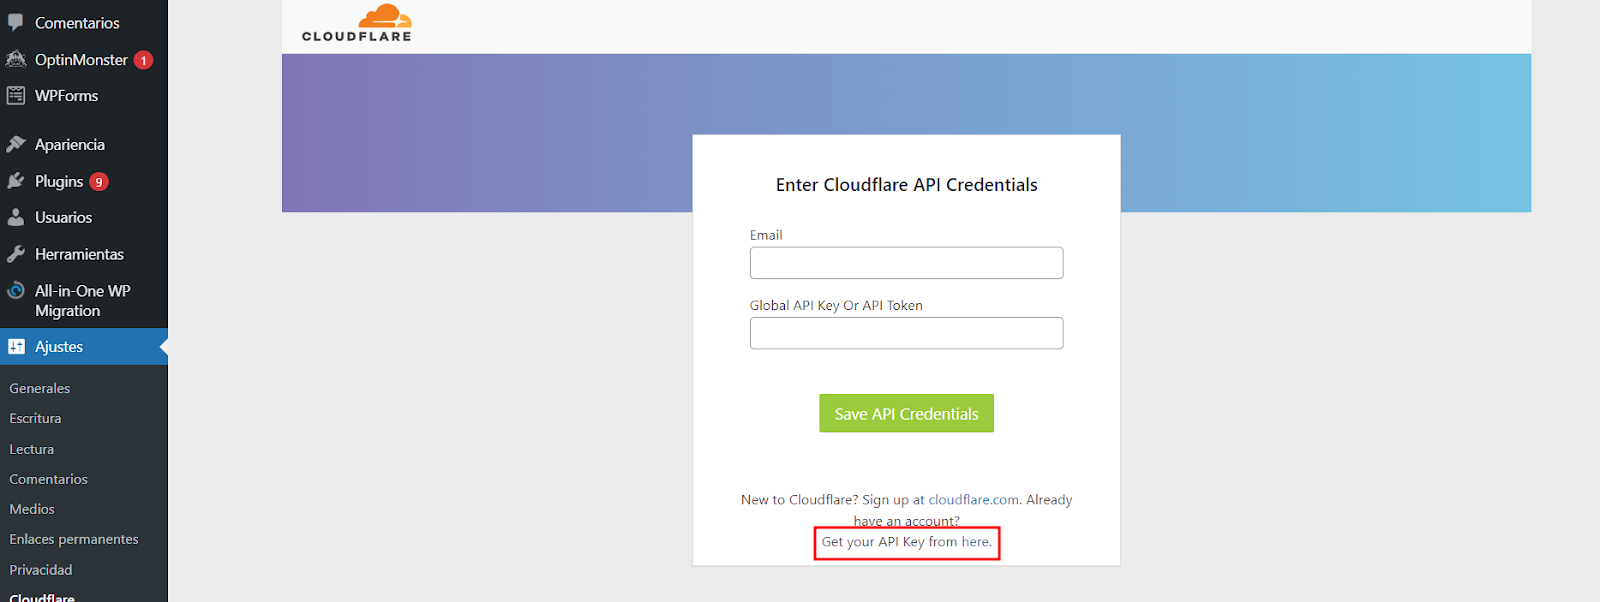 Sección de Cloudflare para obtener la Clave API 